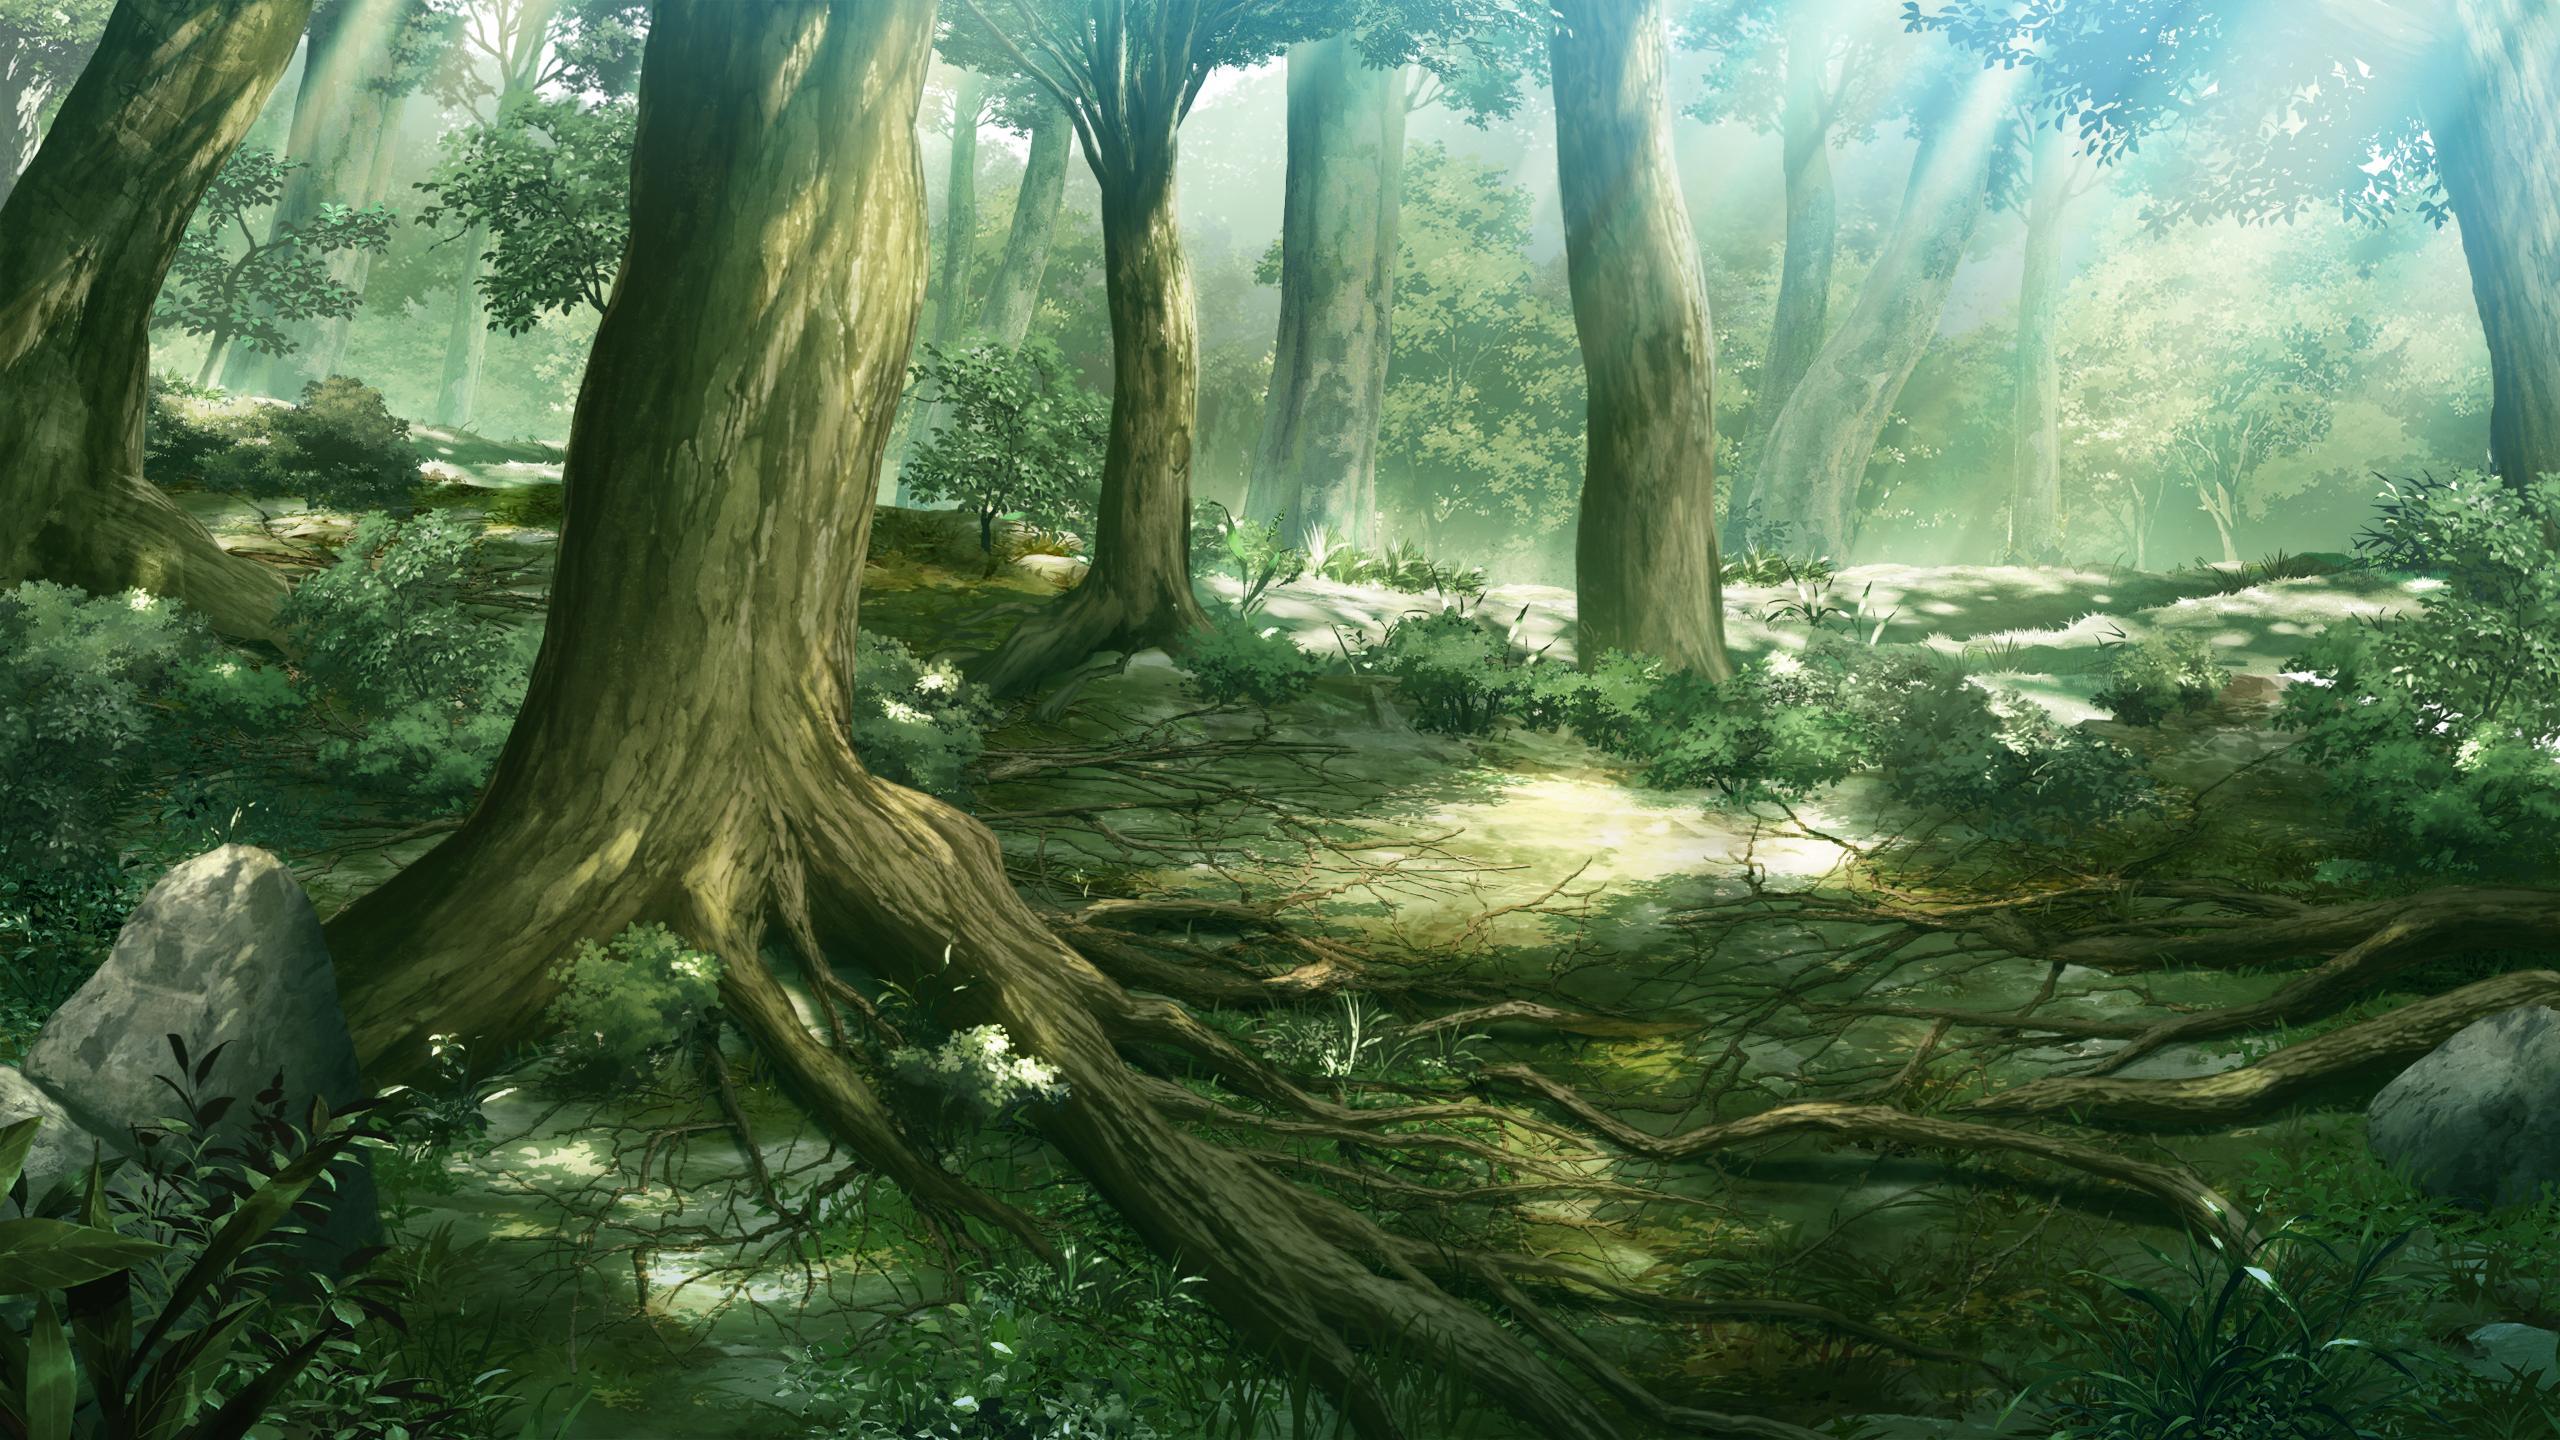 Hình nền rừng anime sẽ mang đến cho bạn cảm giác yên bình và gần gũi với thiên nhiên. Với những chi tiết tinh tế về rừng rậm, bạn sẽ được trải nghiệm những khoảnh khắc tuyệt vời với những nhân vật yêu thích của mình. Hãy thể hiện đam mê với anime của bạn bằng cách đổi hình nền rừng anime đẹp này.